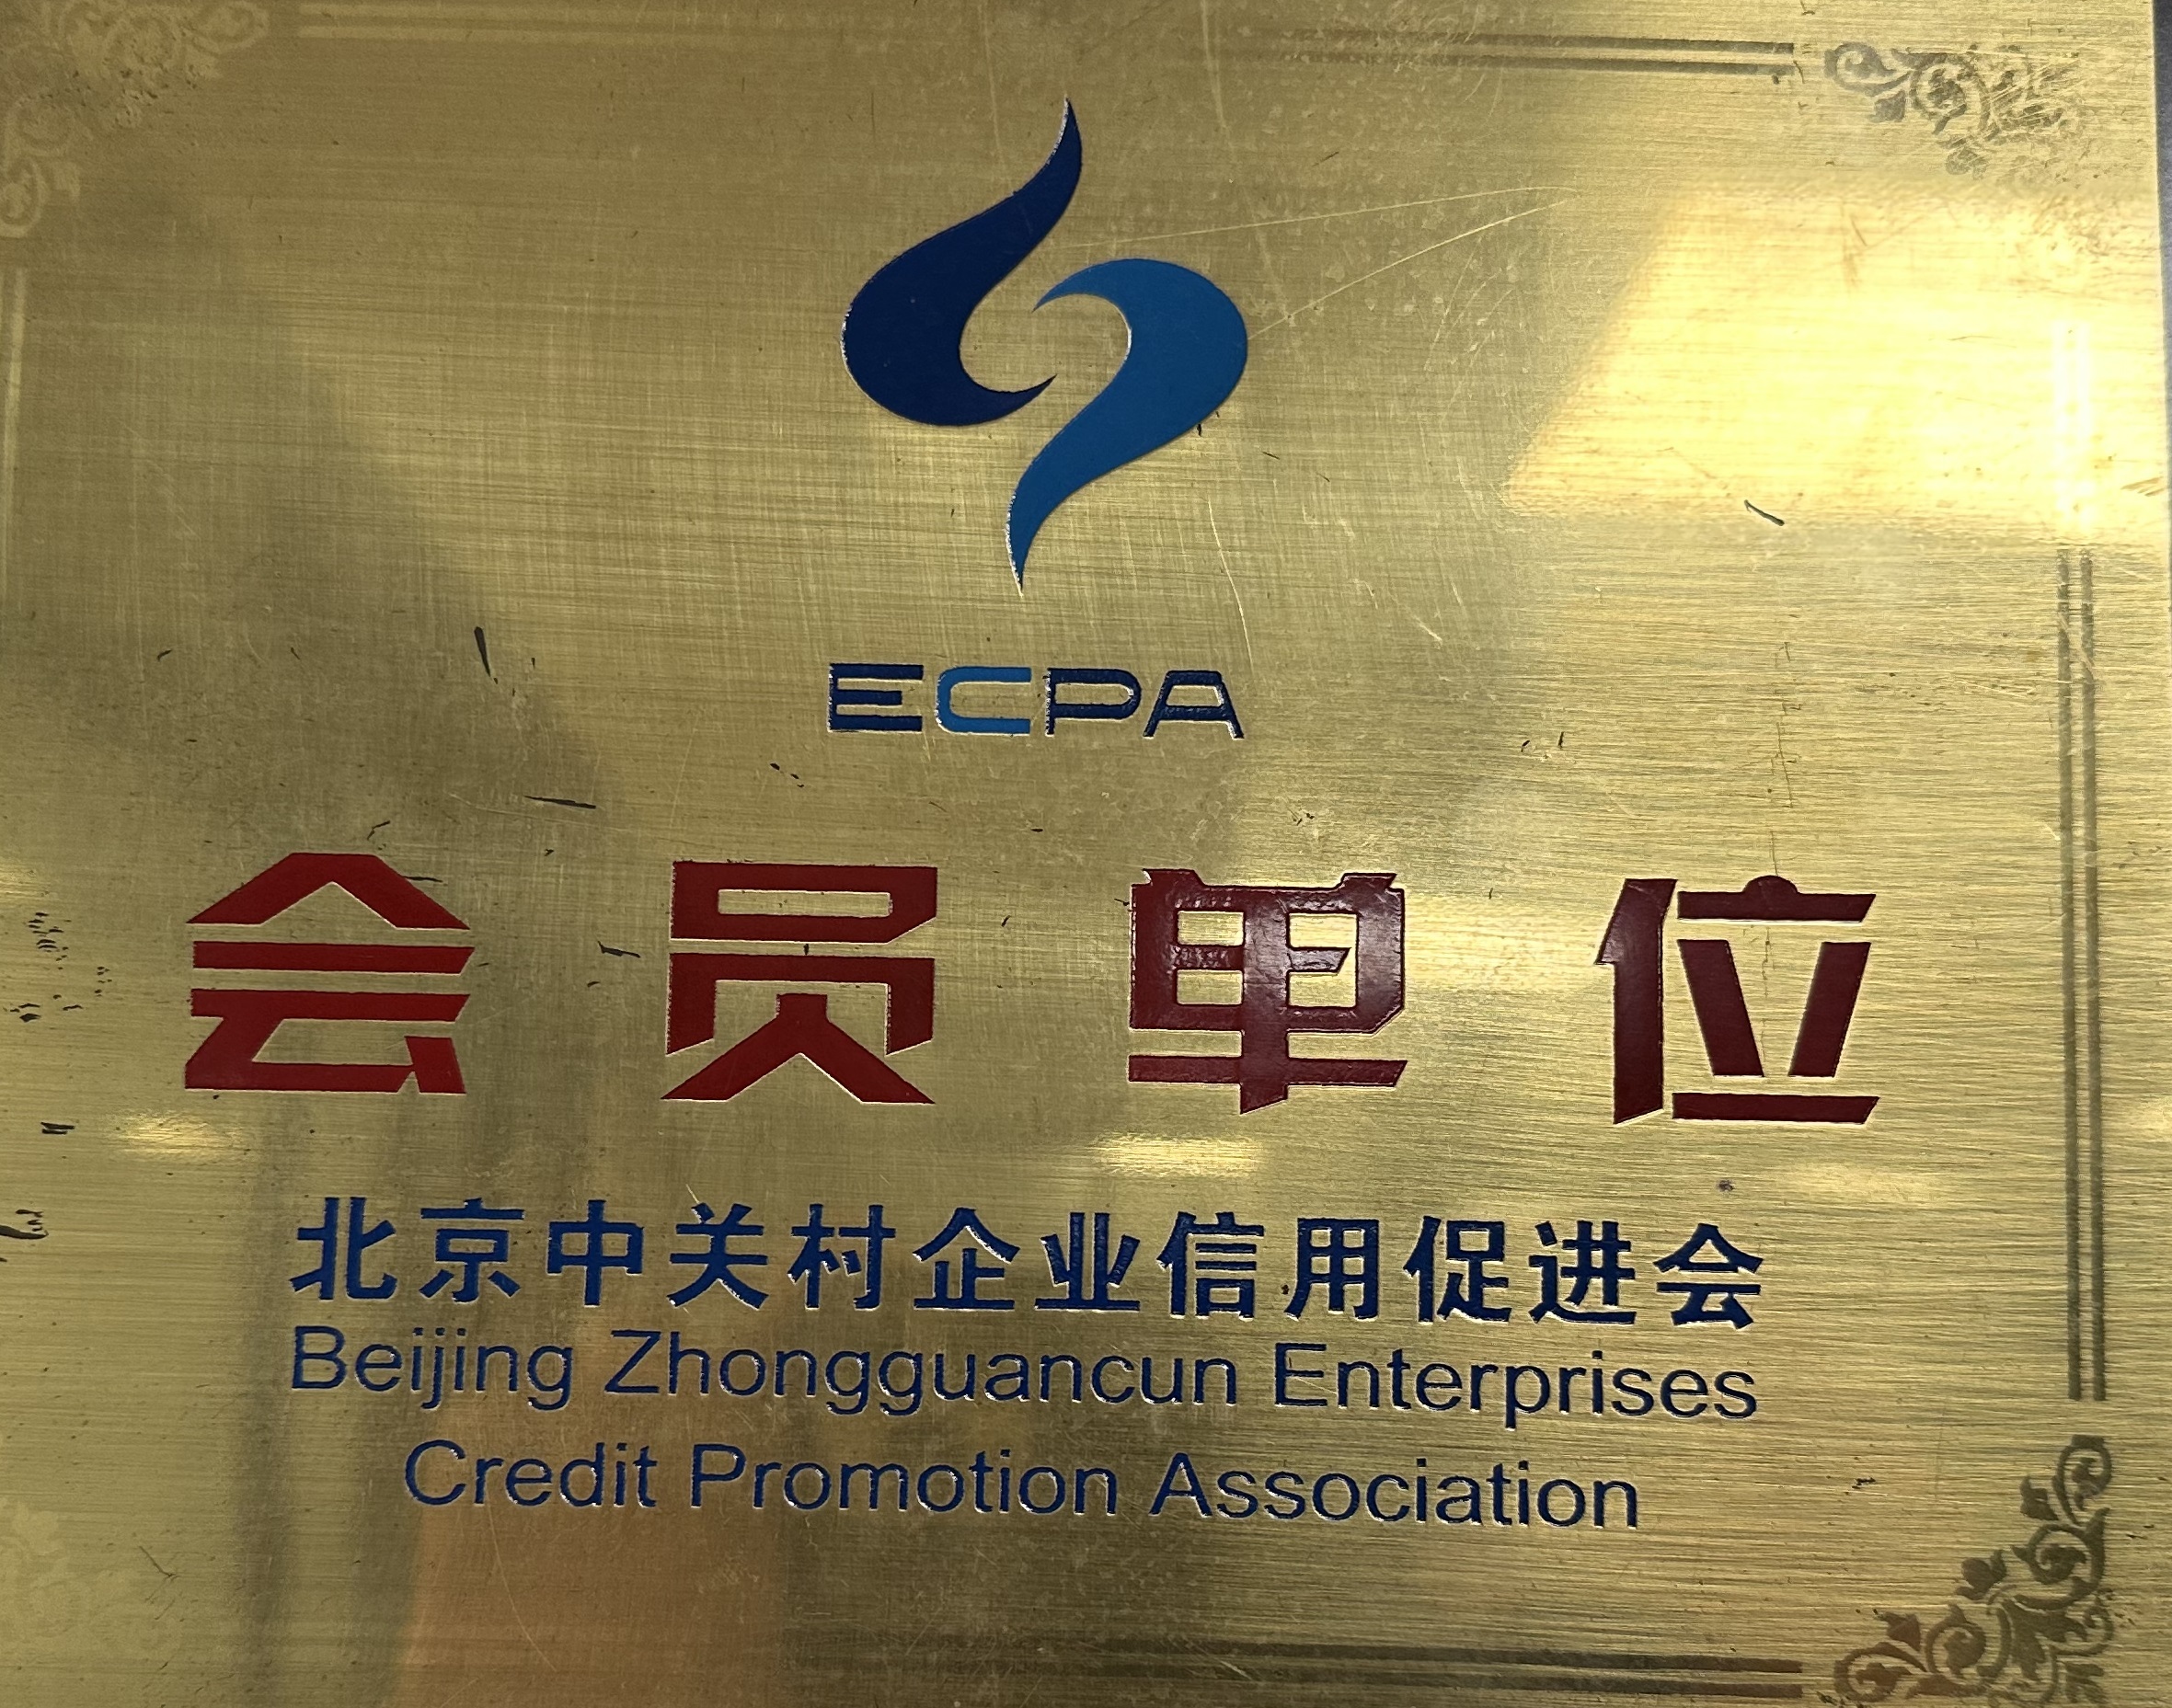 北京中关村企业信用促进会 会员单位